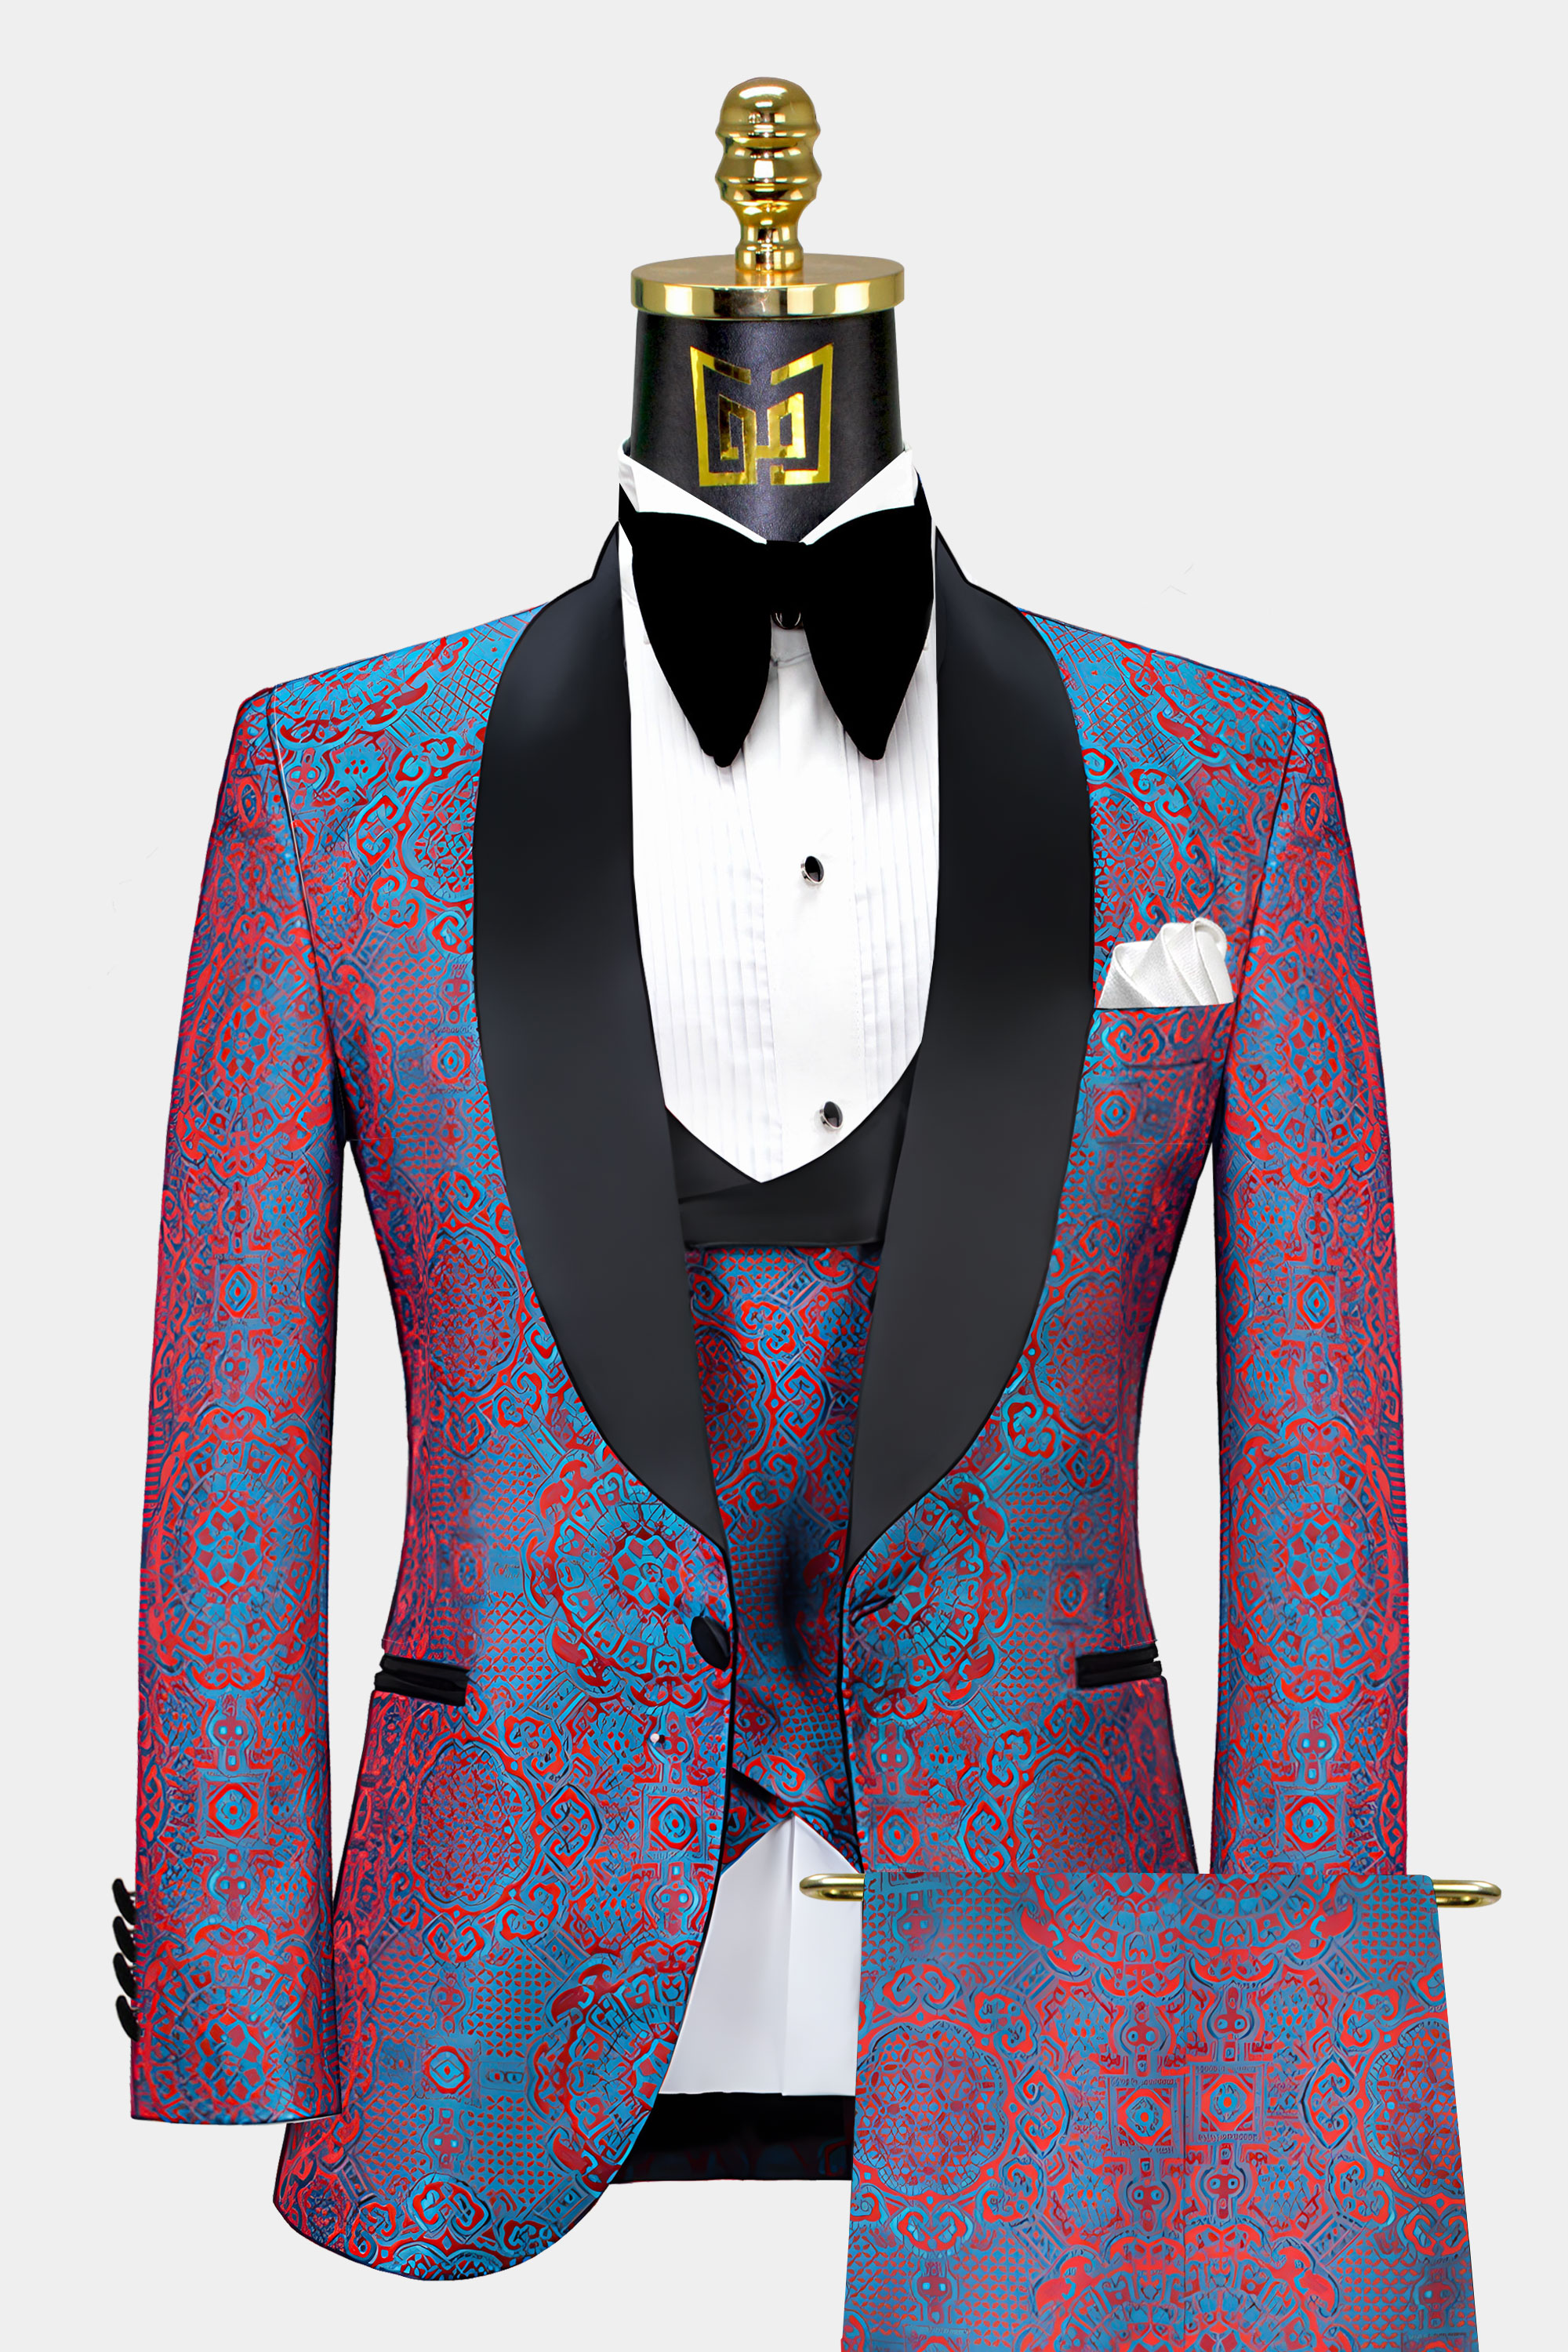 Blue-and-Red-Tuxedo-Wedding-Groom-Prom-Suit-from-Gentlemansguru.com